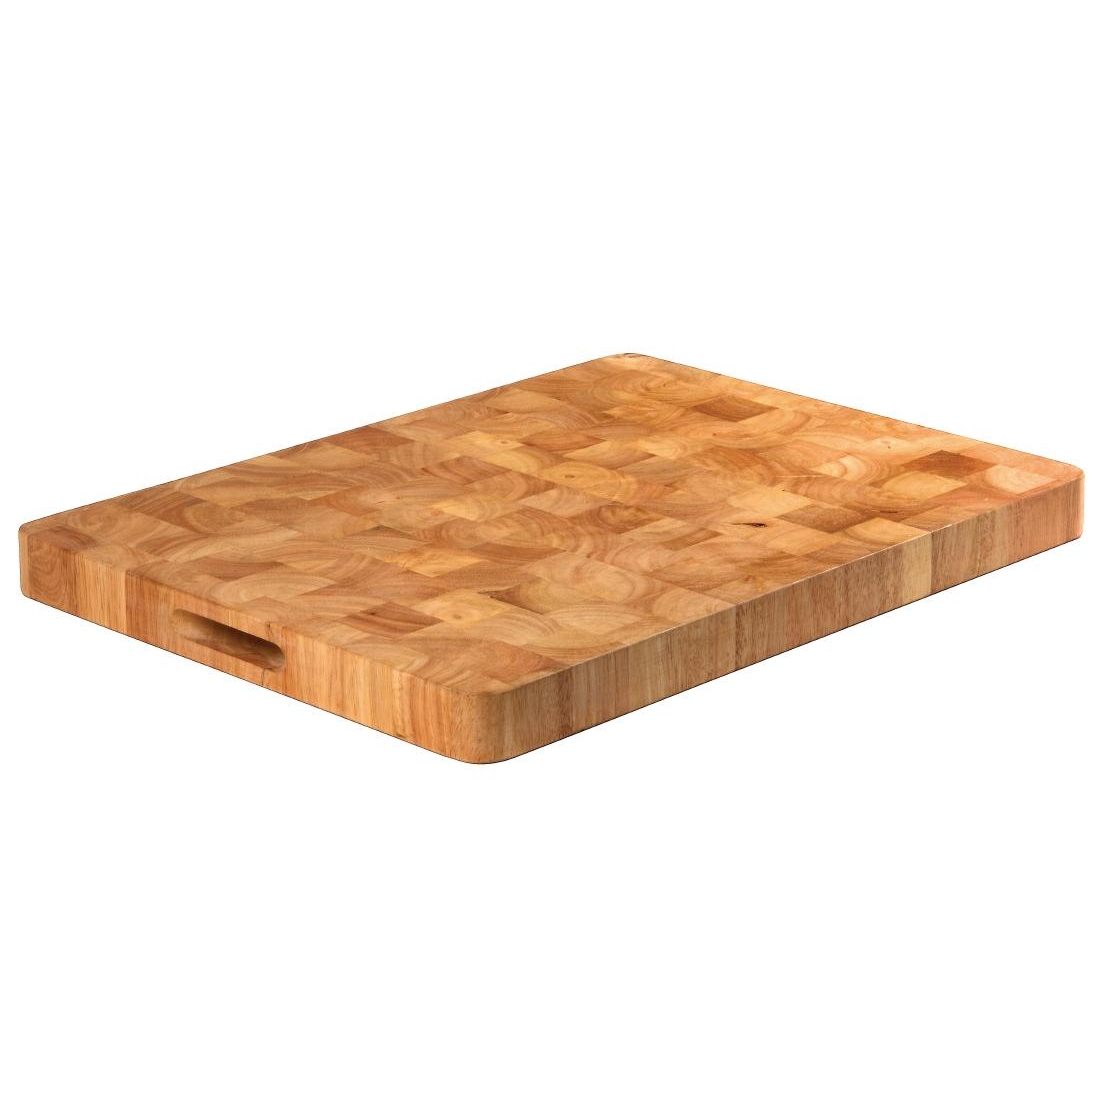 c460_vogue-wooden-chop-board